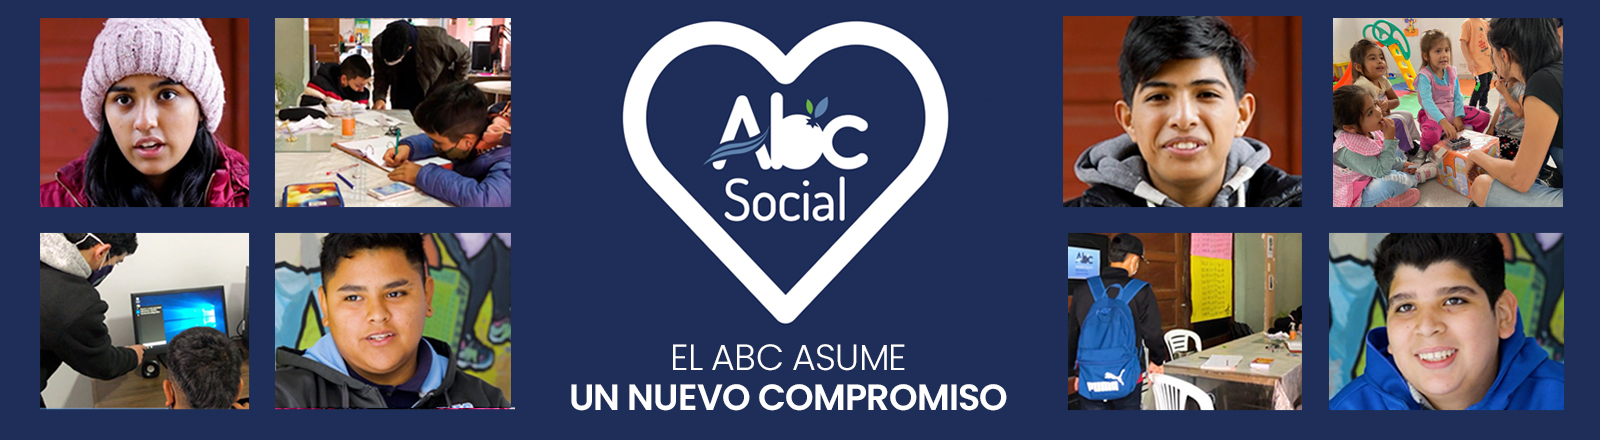 slide abc social